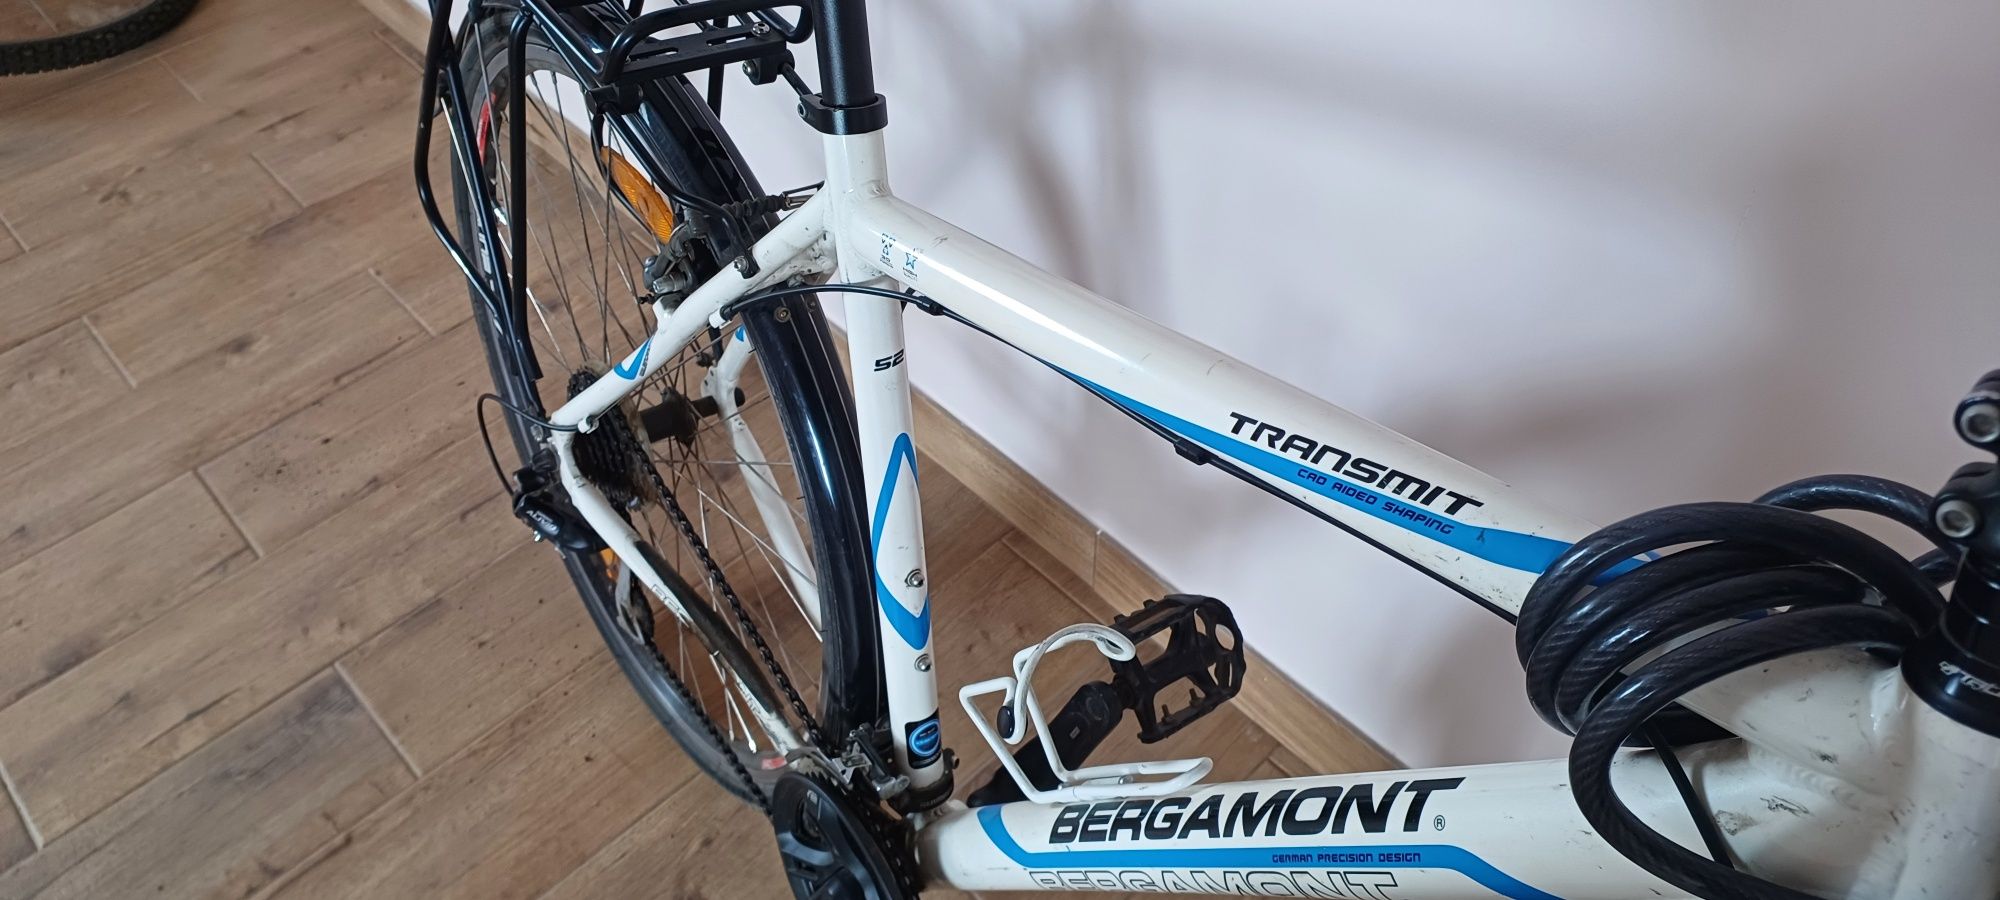 Велосипед Bergamont Transmit